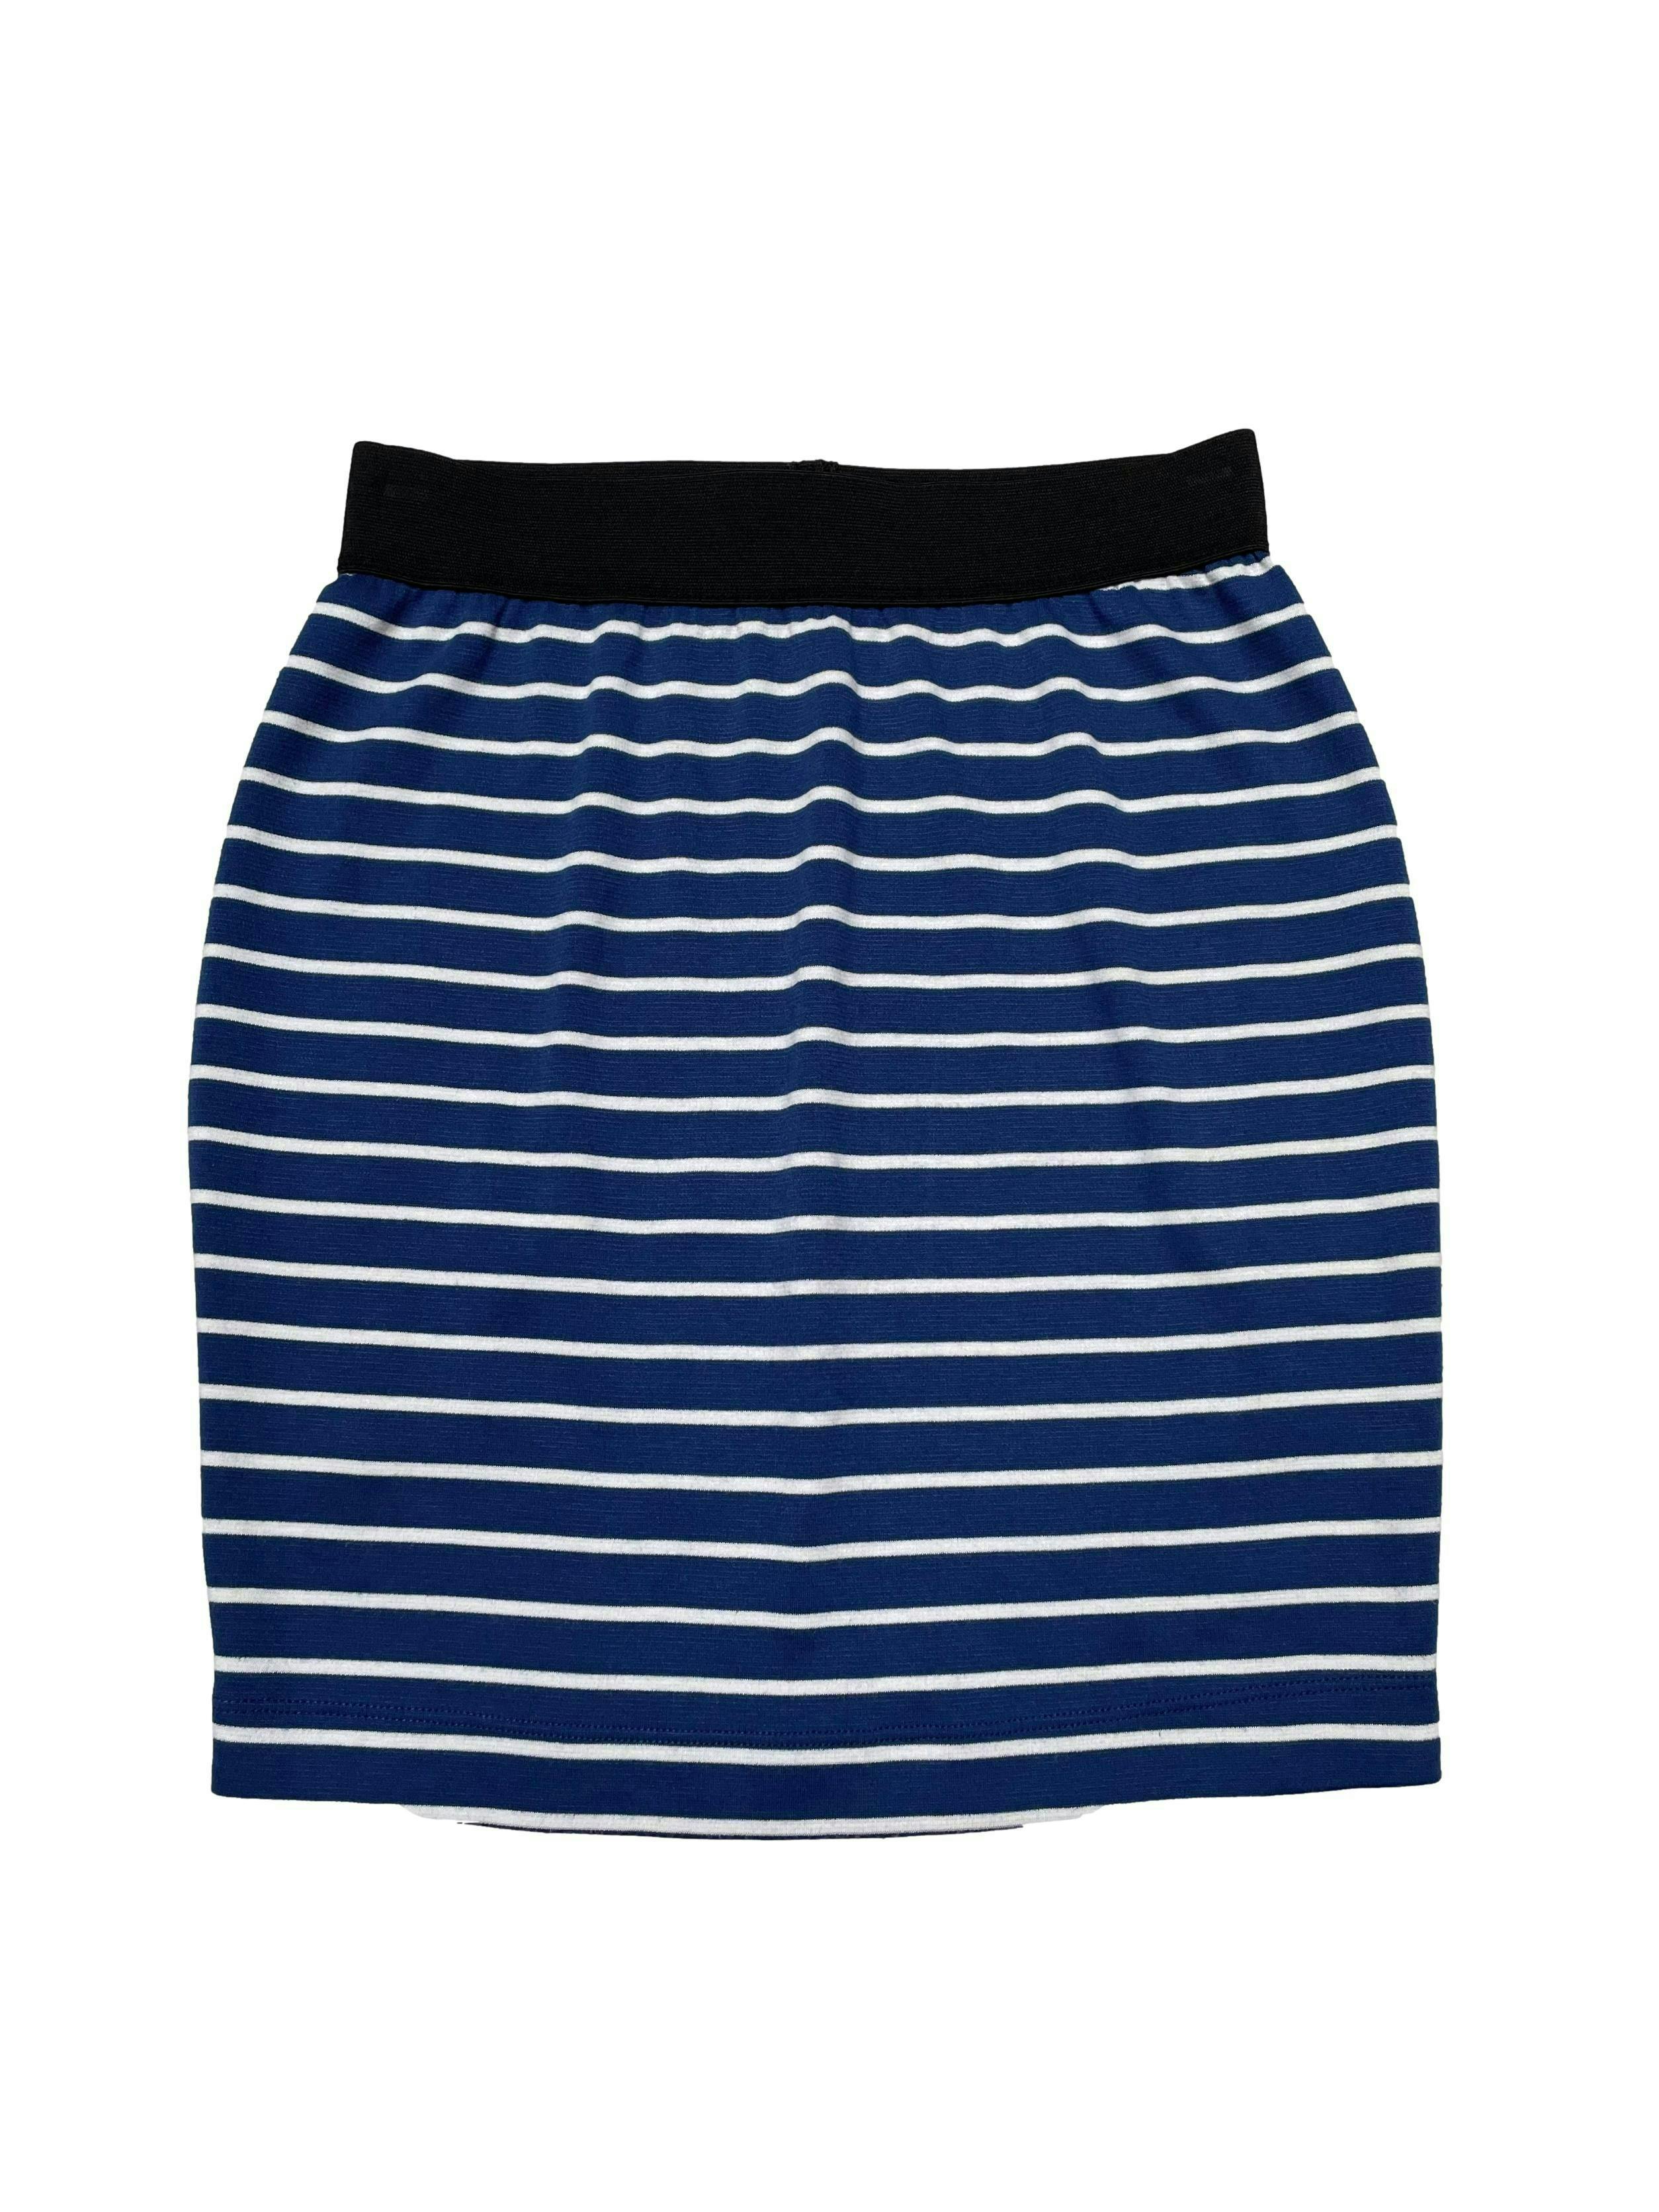 Falda 15.50 pretina elástica negra, falda a rayas azules y blancas tipo algodón stretch. Cintura 66cm sin estirar Largo 45cm